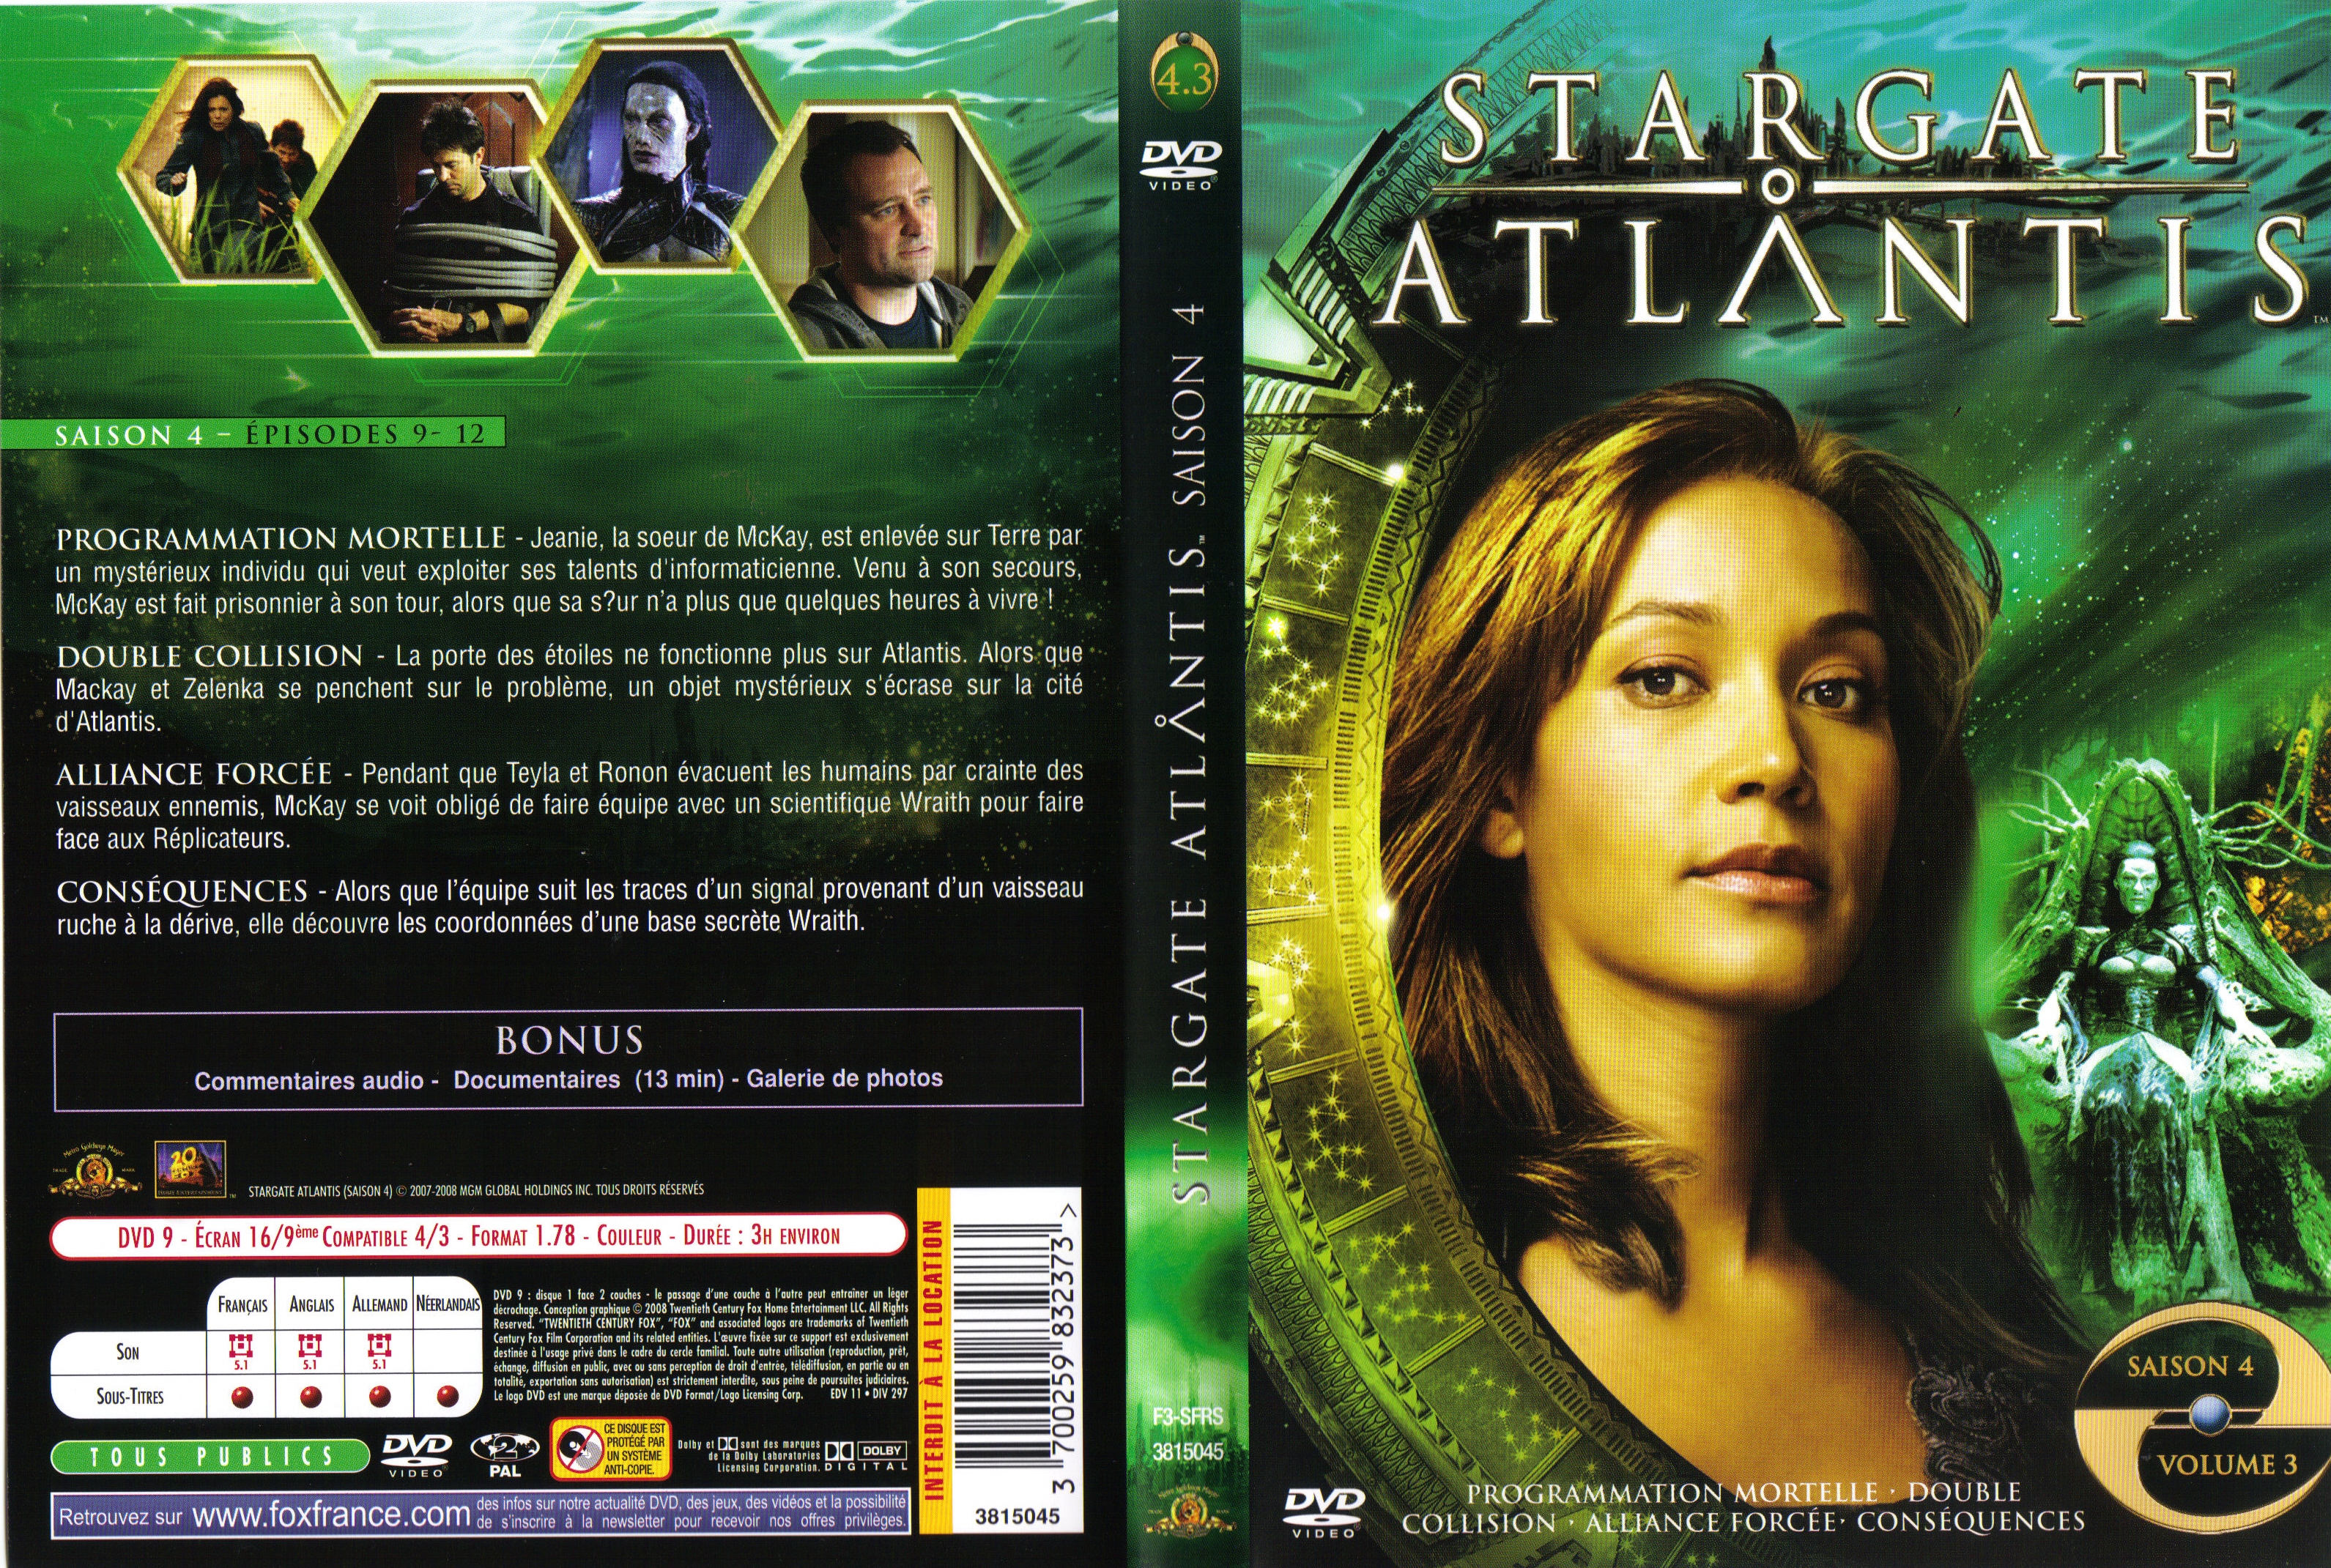 Jaquette DVD Stargate Atlantis Saison 4 vol 3